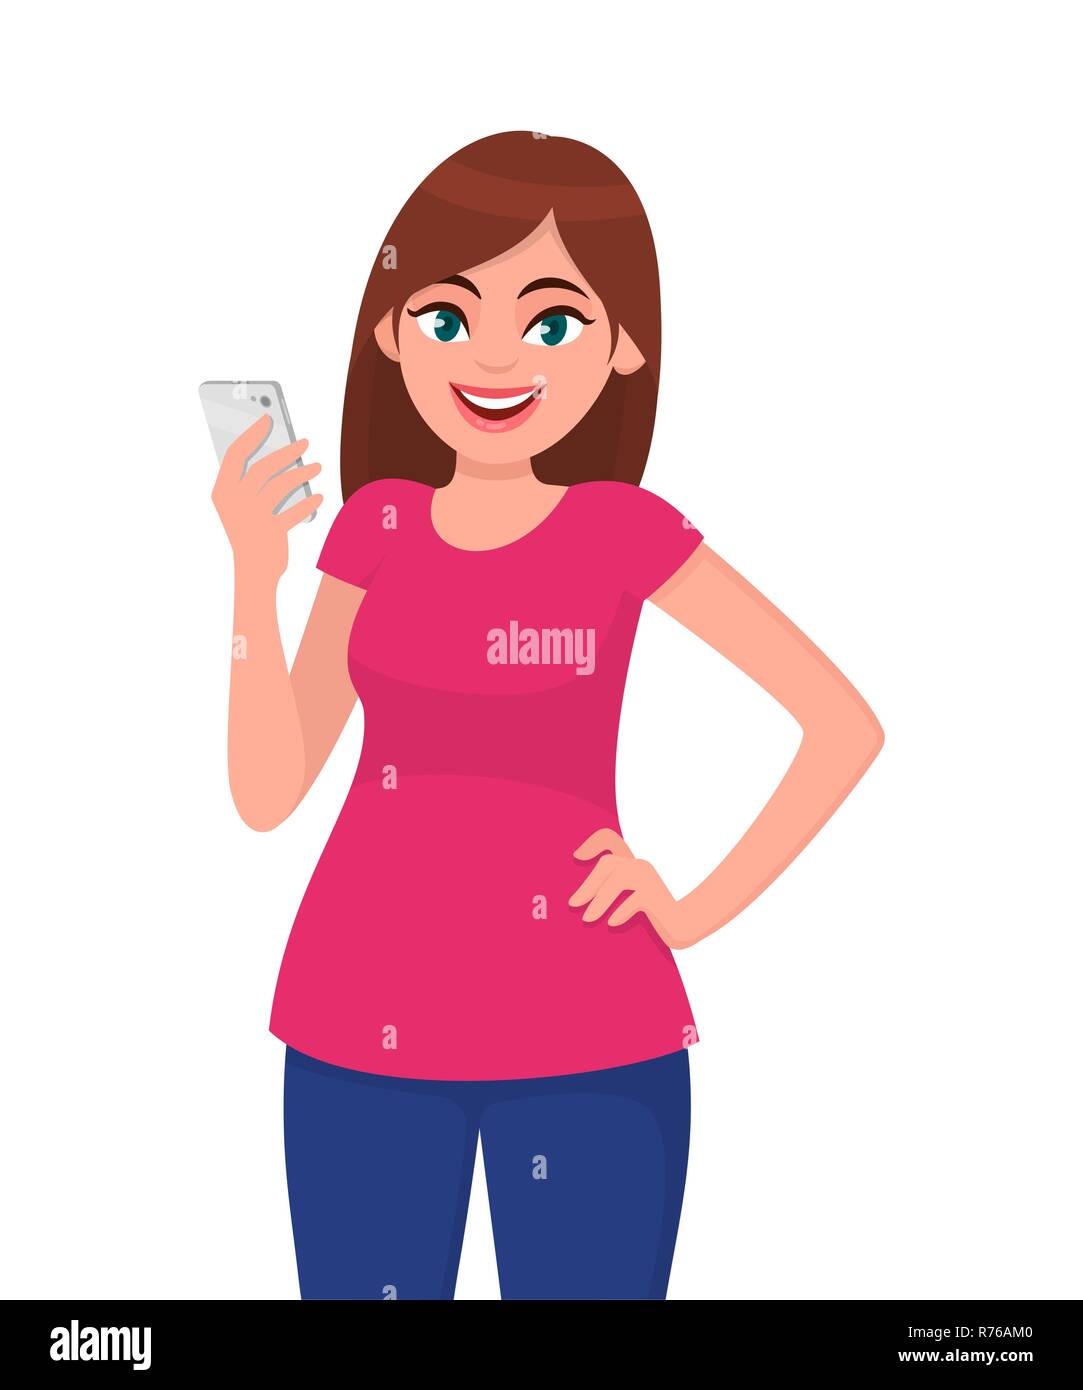 Lächelnd schöne junge Frau mit Smart Phone während die Hand auf die Hüfte und vor weißem Hintergrund. Moderner Lifestyle und Kommunikation Stock Vektor